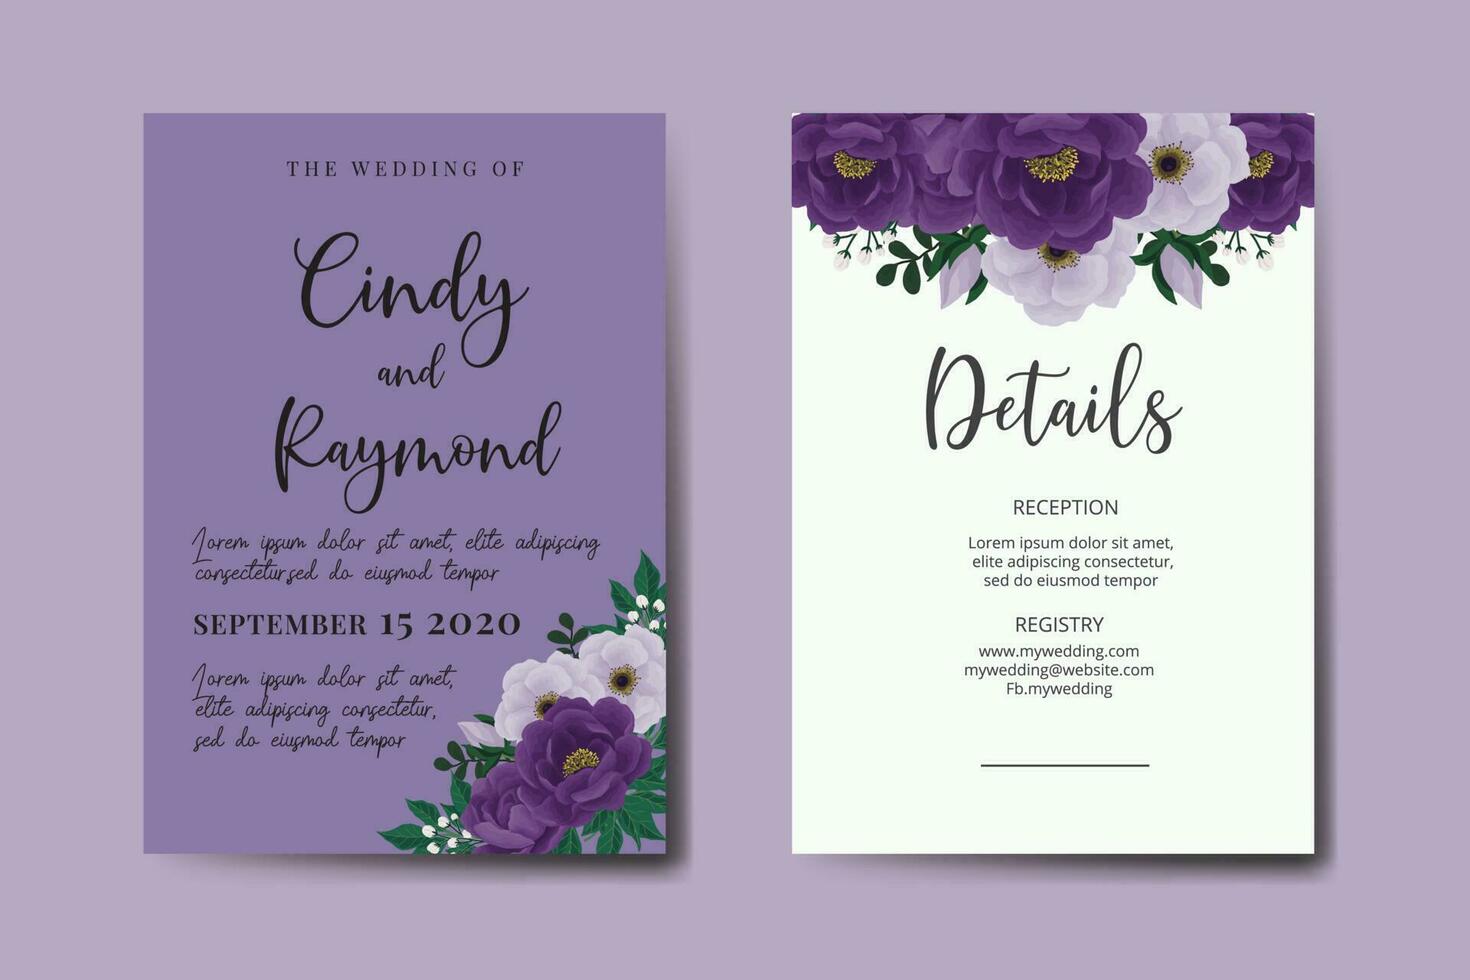 ensemble de cadre d'invitation de mariage, modèle de carte d'invitation de conception de fleur de pivoine violette dessinée à la main numérique aquarelle florale vecteur